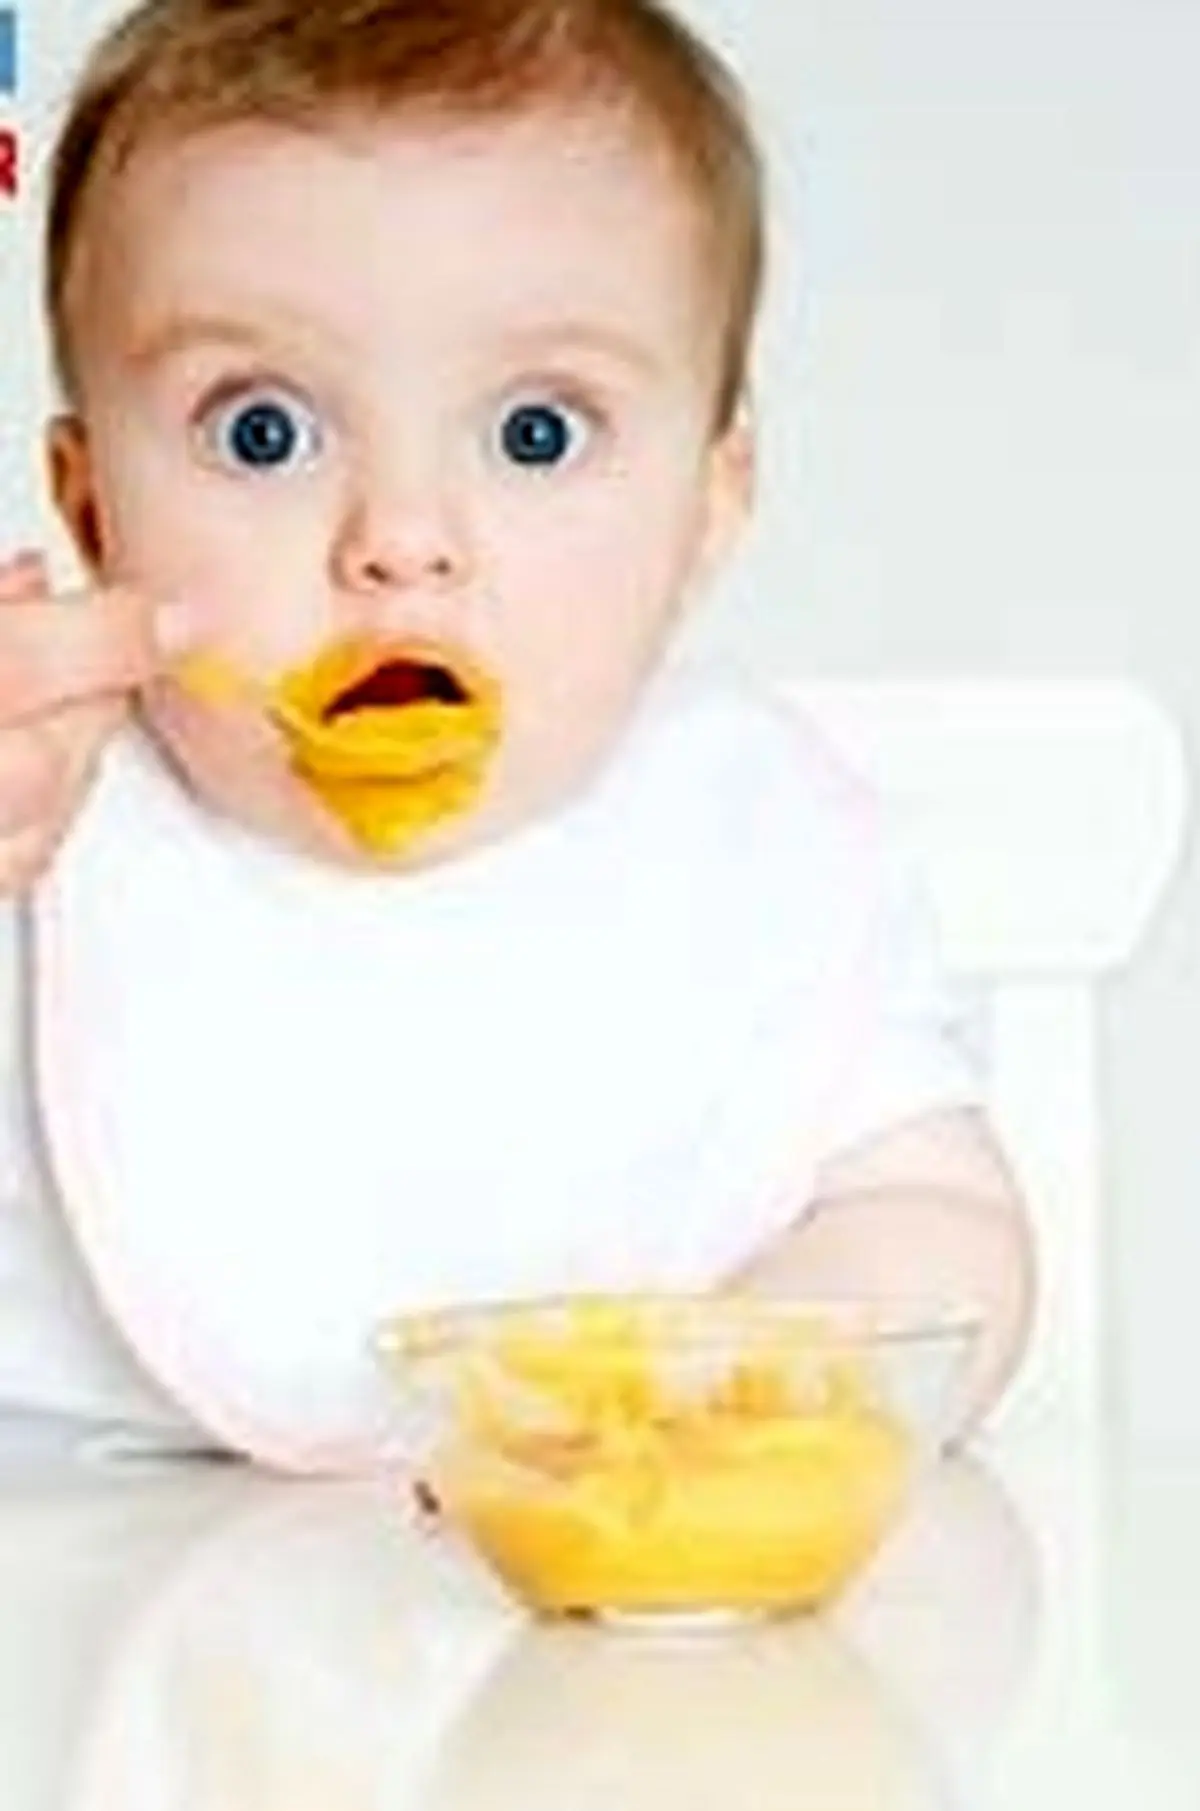 تحقیقات نشان می دهد که برخی از والدین خیلی زود غذای کمکی را برای فرزند خود شروع می کنند.